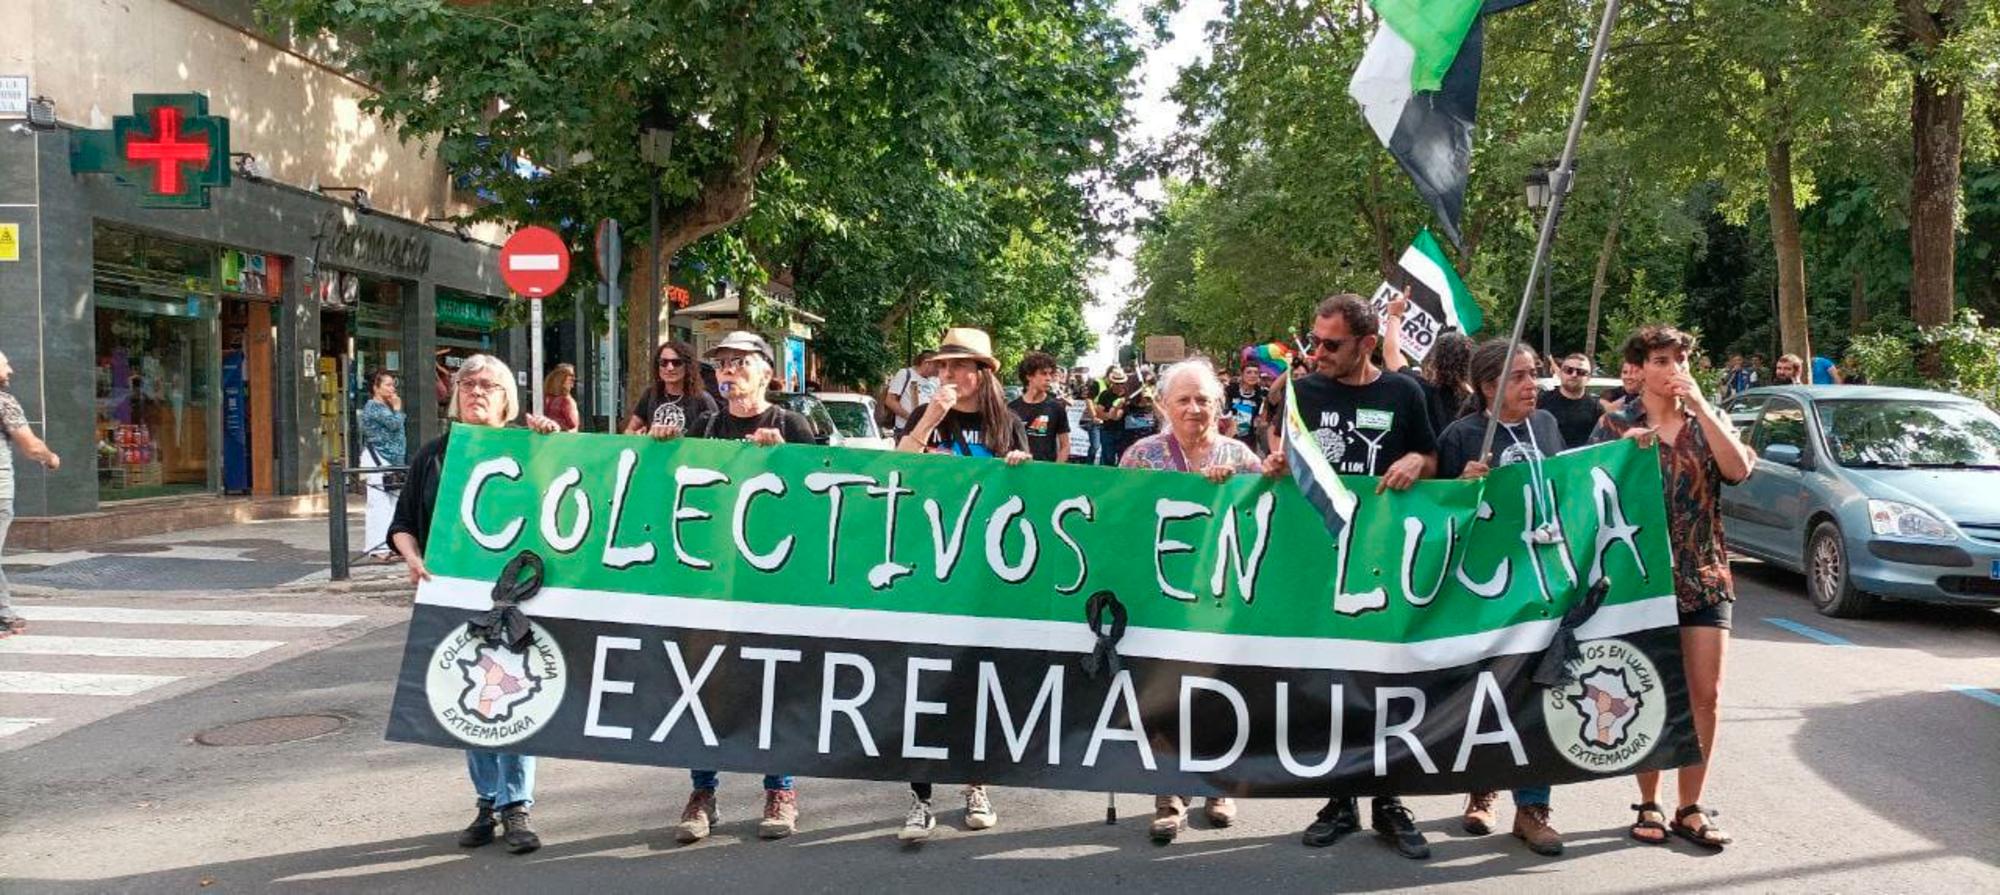 Colectivos en Lucha Extremadura